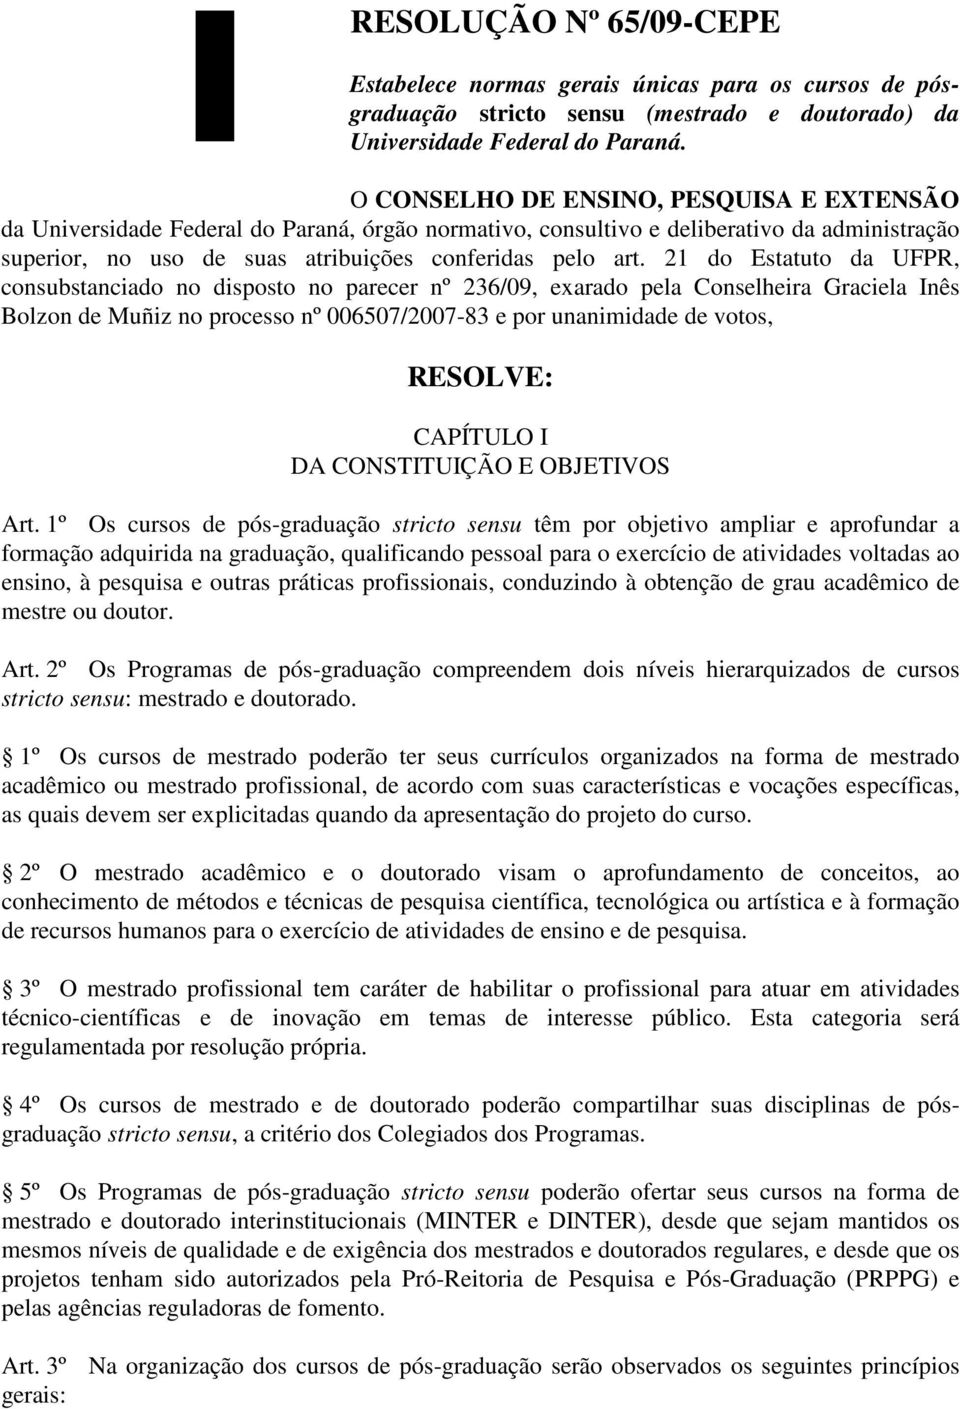 21 do Estatuto da UFPR, consubstanciado no disposto no parecer nº 236/09, exarado pela Conselheira Graciela Inês Bolzon de Muñiz no processo nº 006507/2007-83 e por unanimidade de votos, RESOLVE: